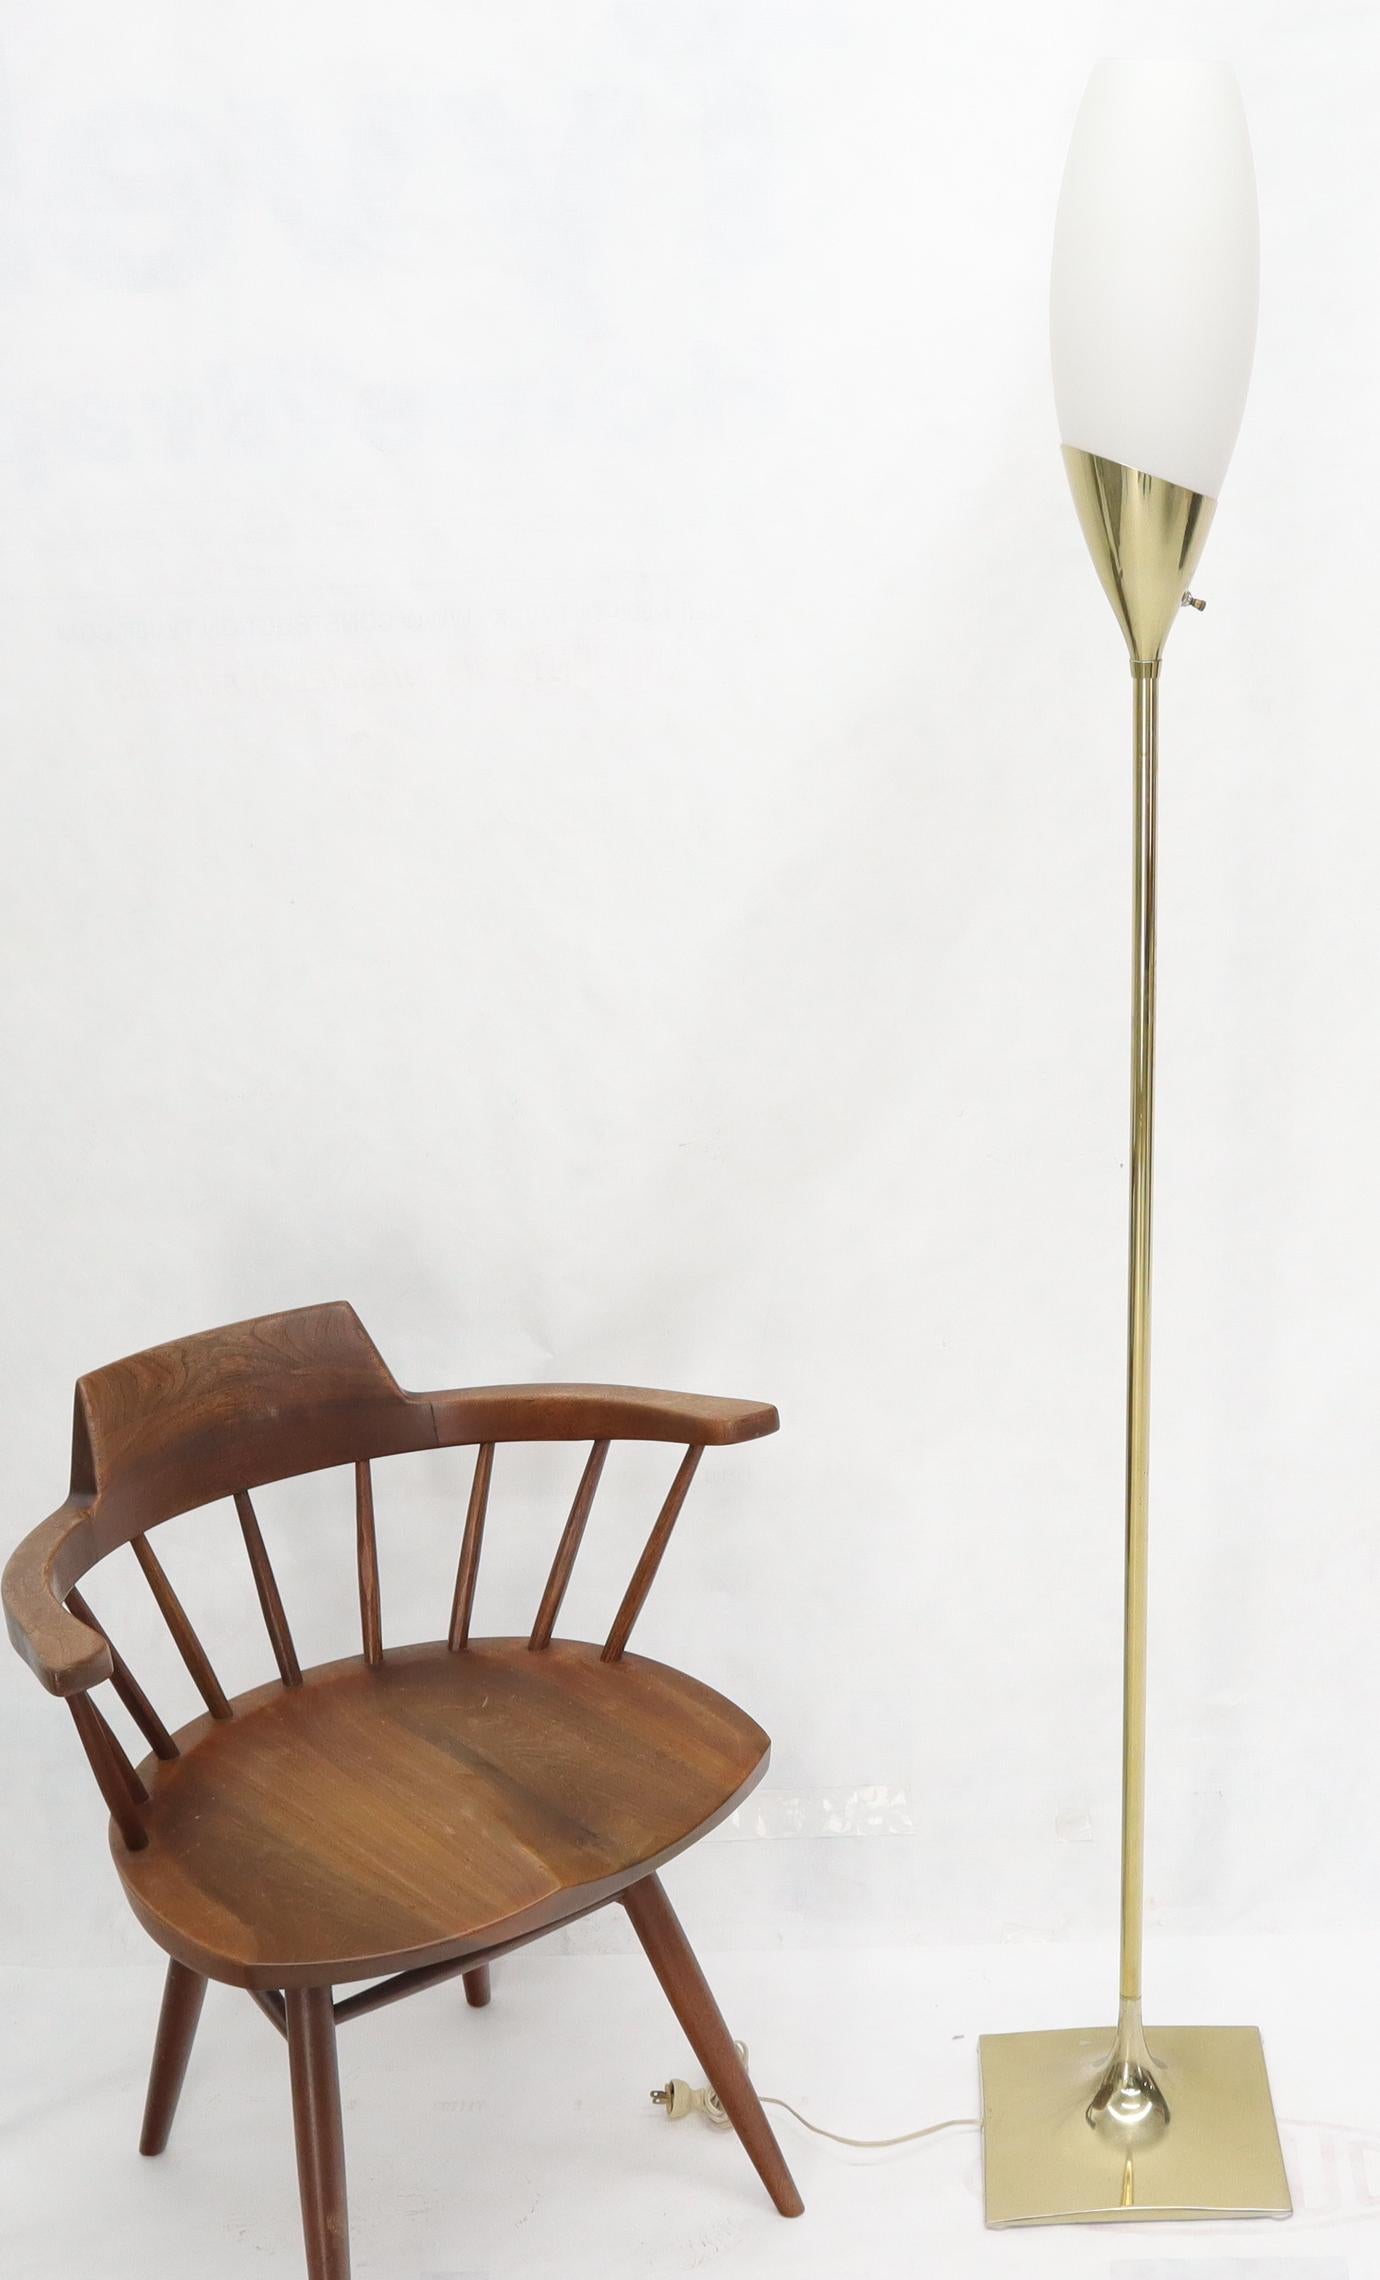 Lampadaire Laurel de style champagne à base tulipe, de style moderne du milieu du siècle.